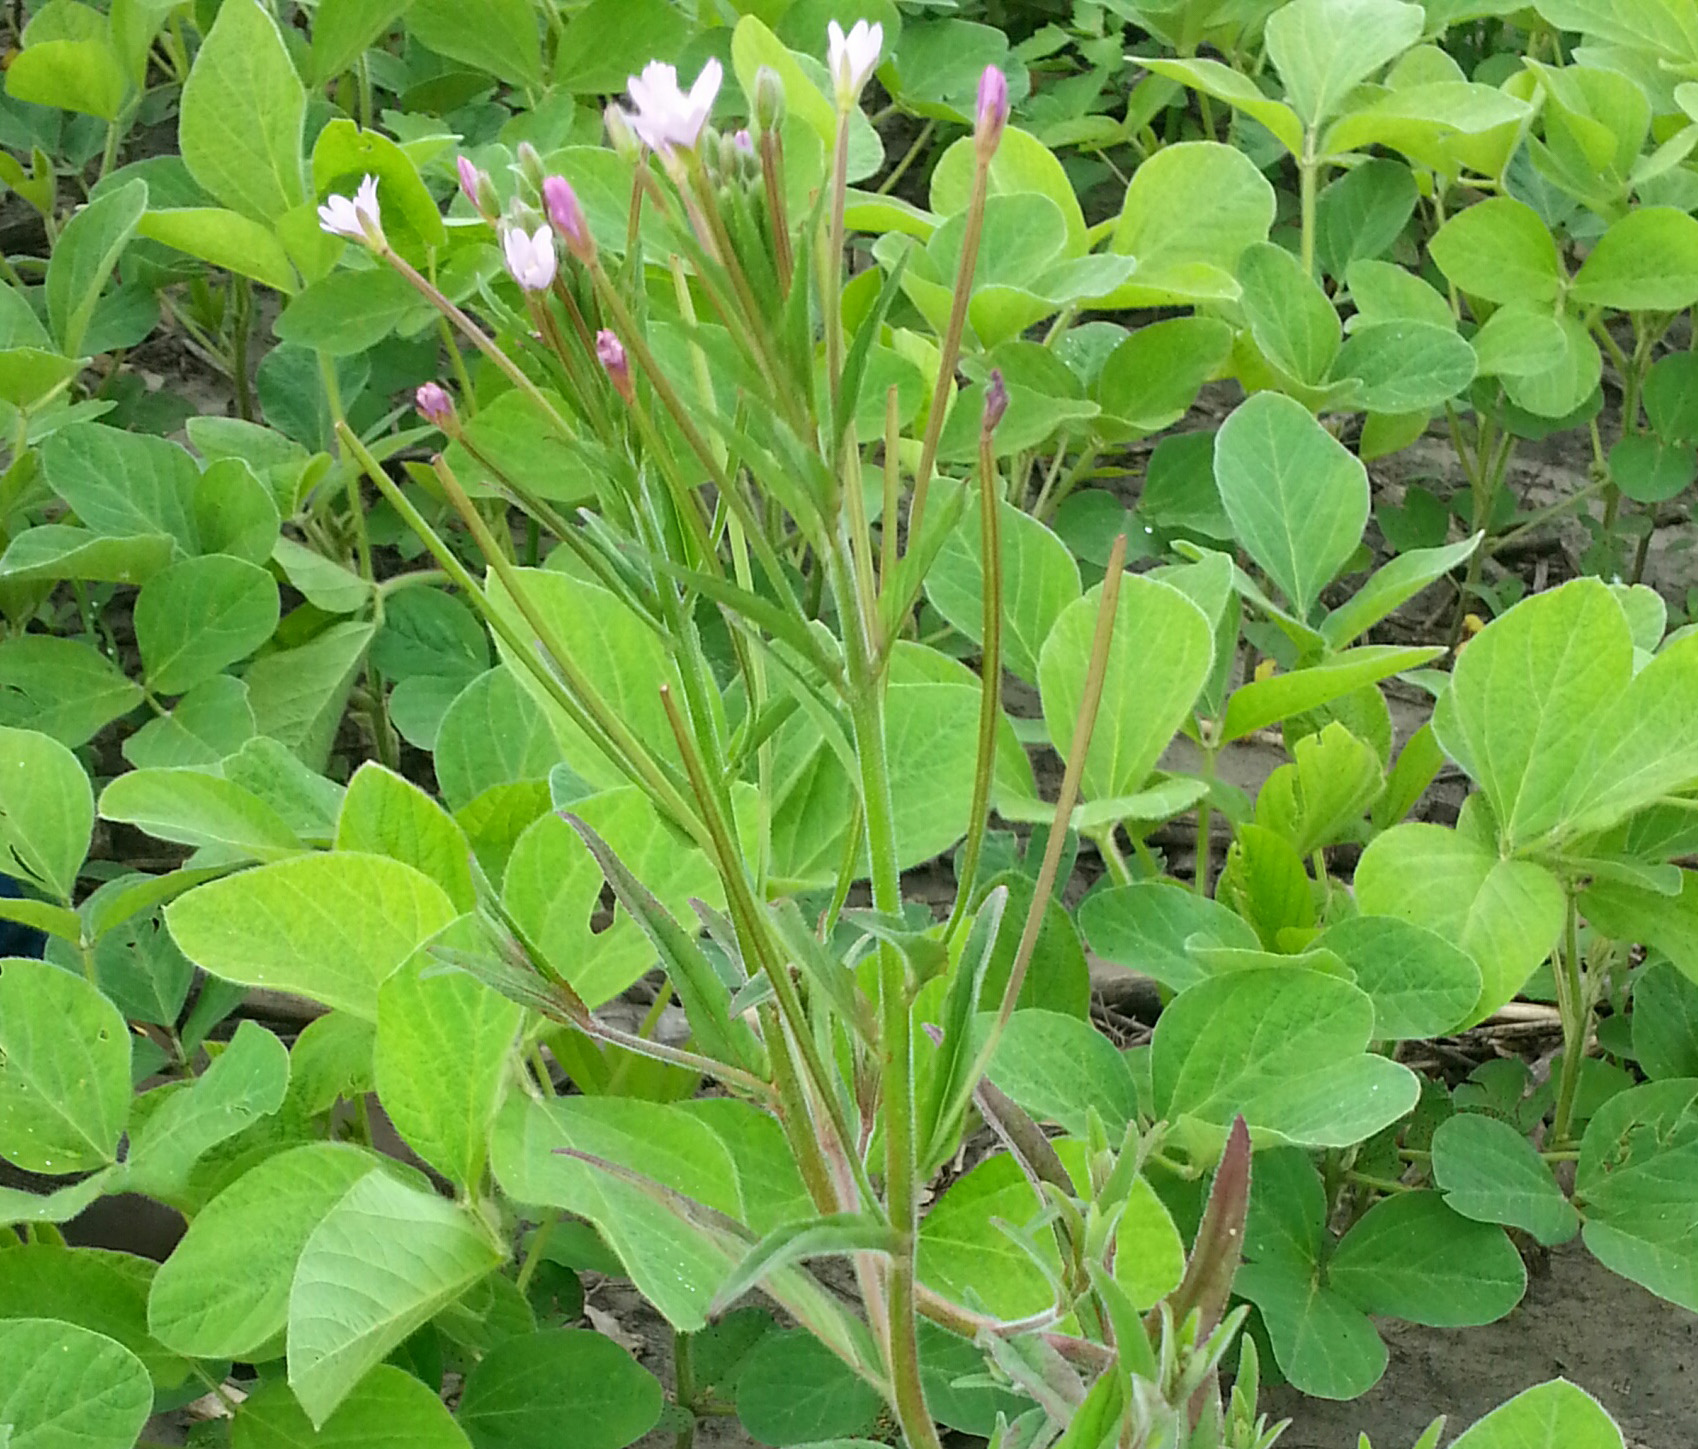 Plante en floraison avec ses fleurs mauve pâle, au début de juillet, dans un champ de soya